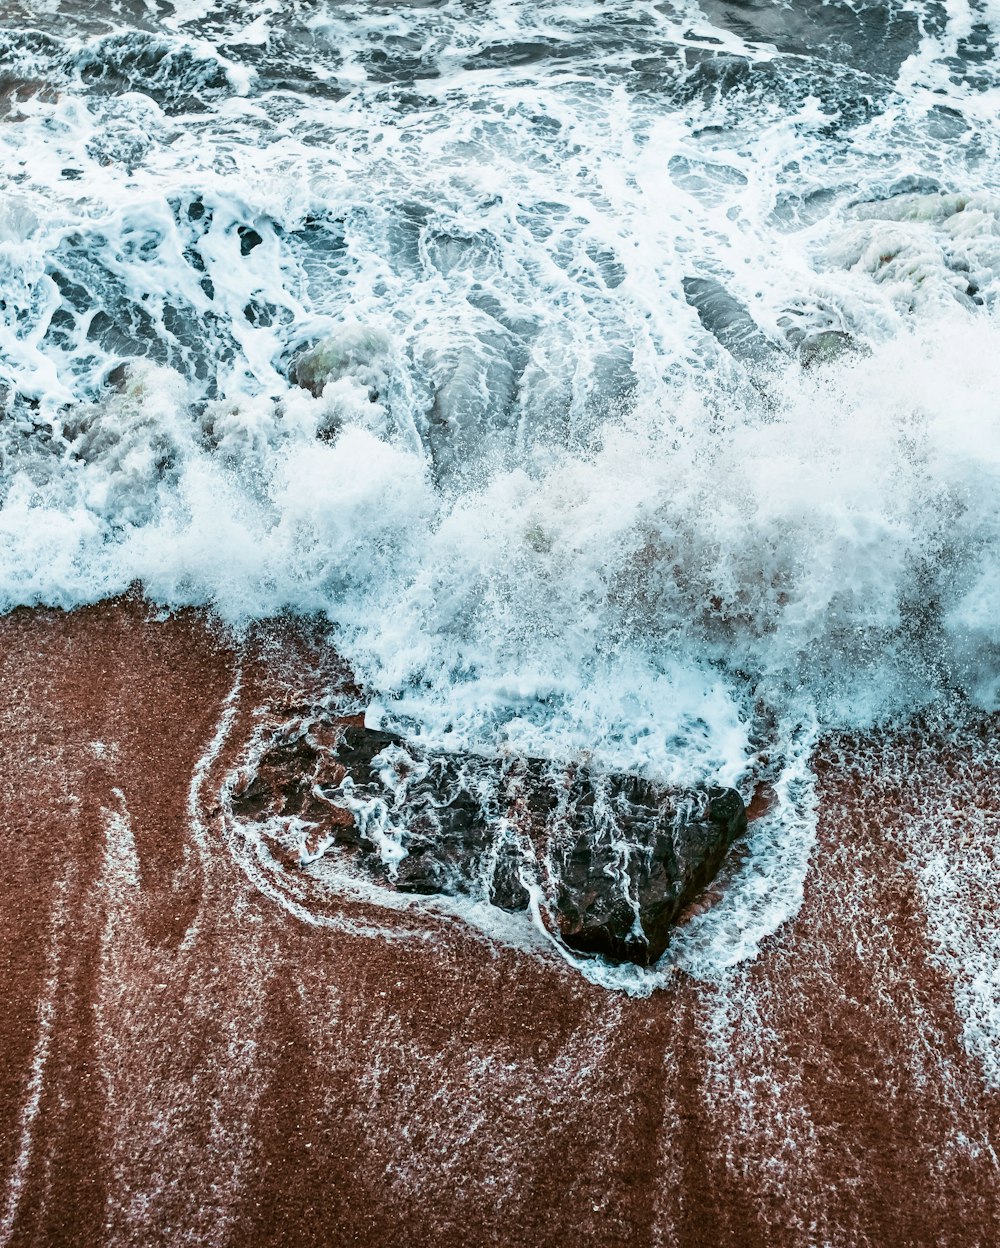 ocean waves crashing on brown sand